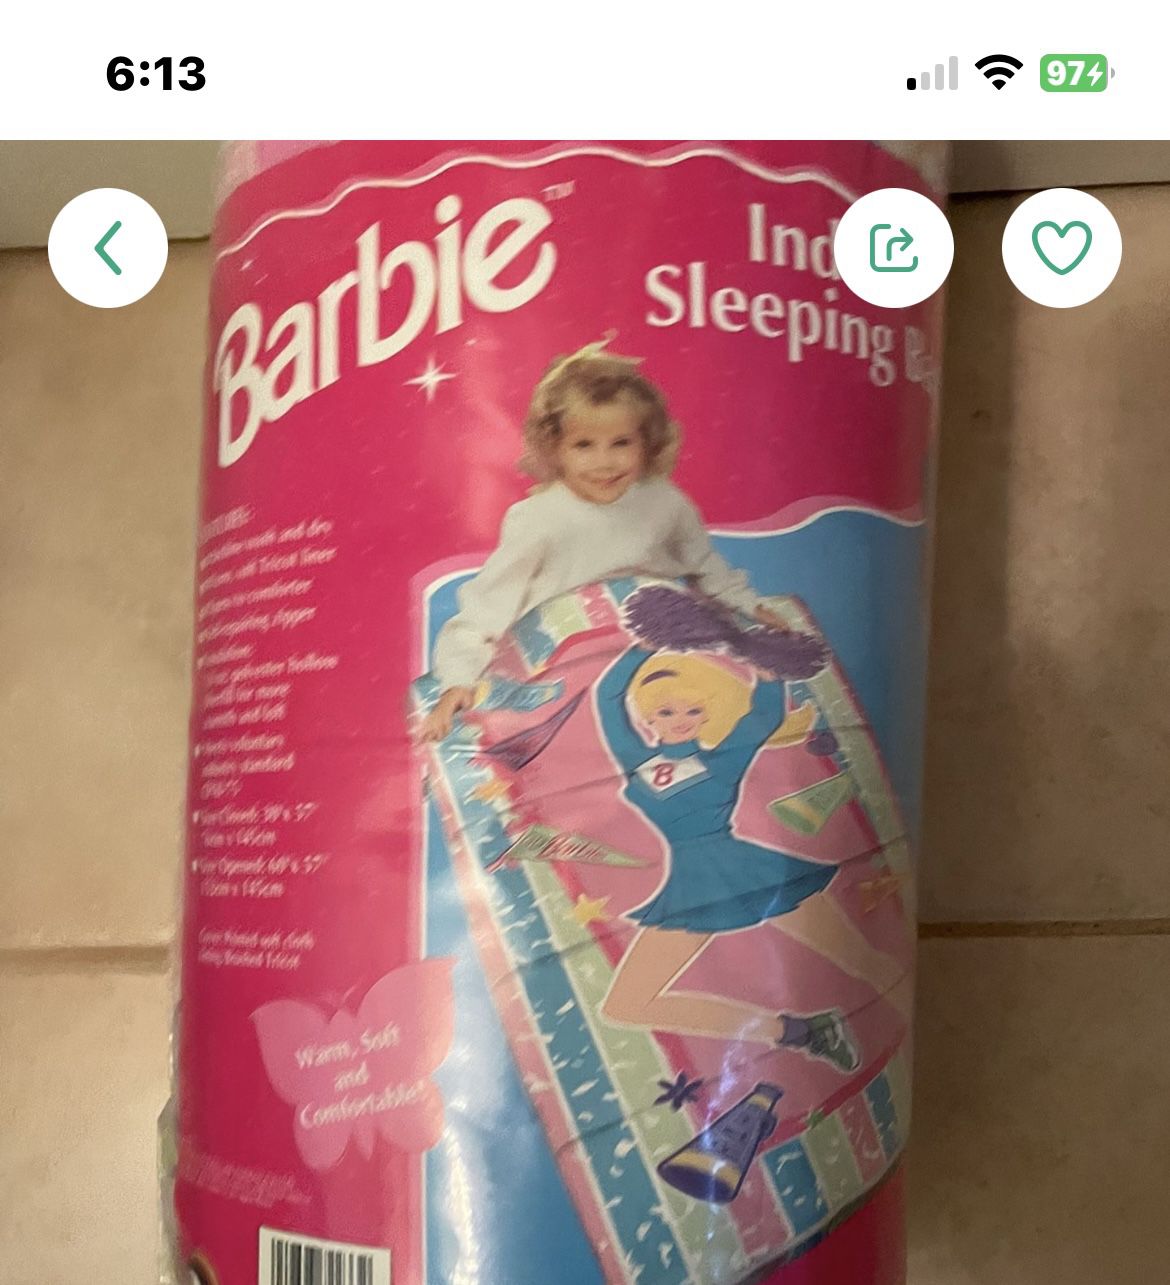 Barbie Sleeping Bag New